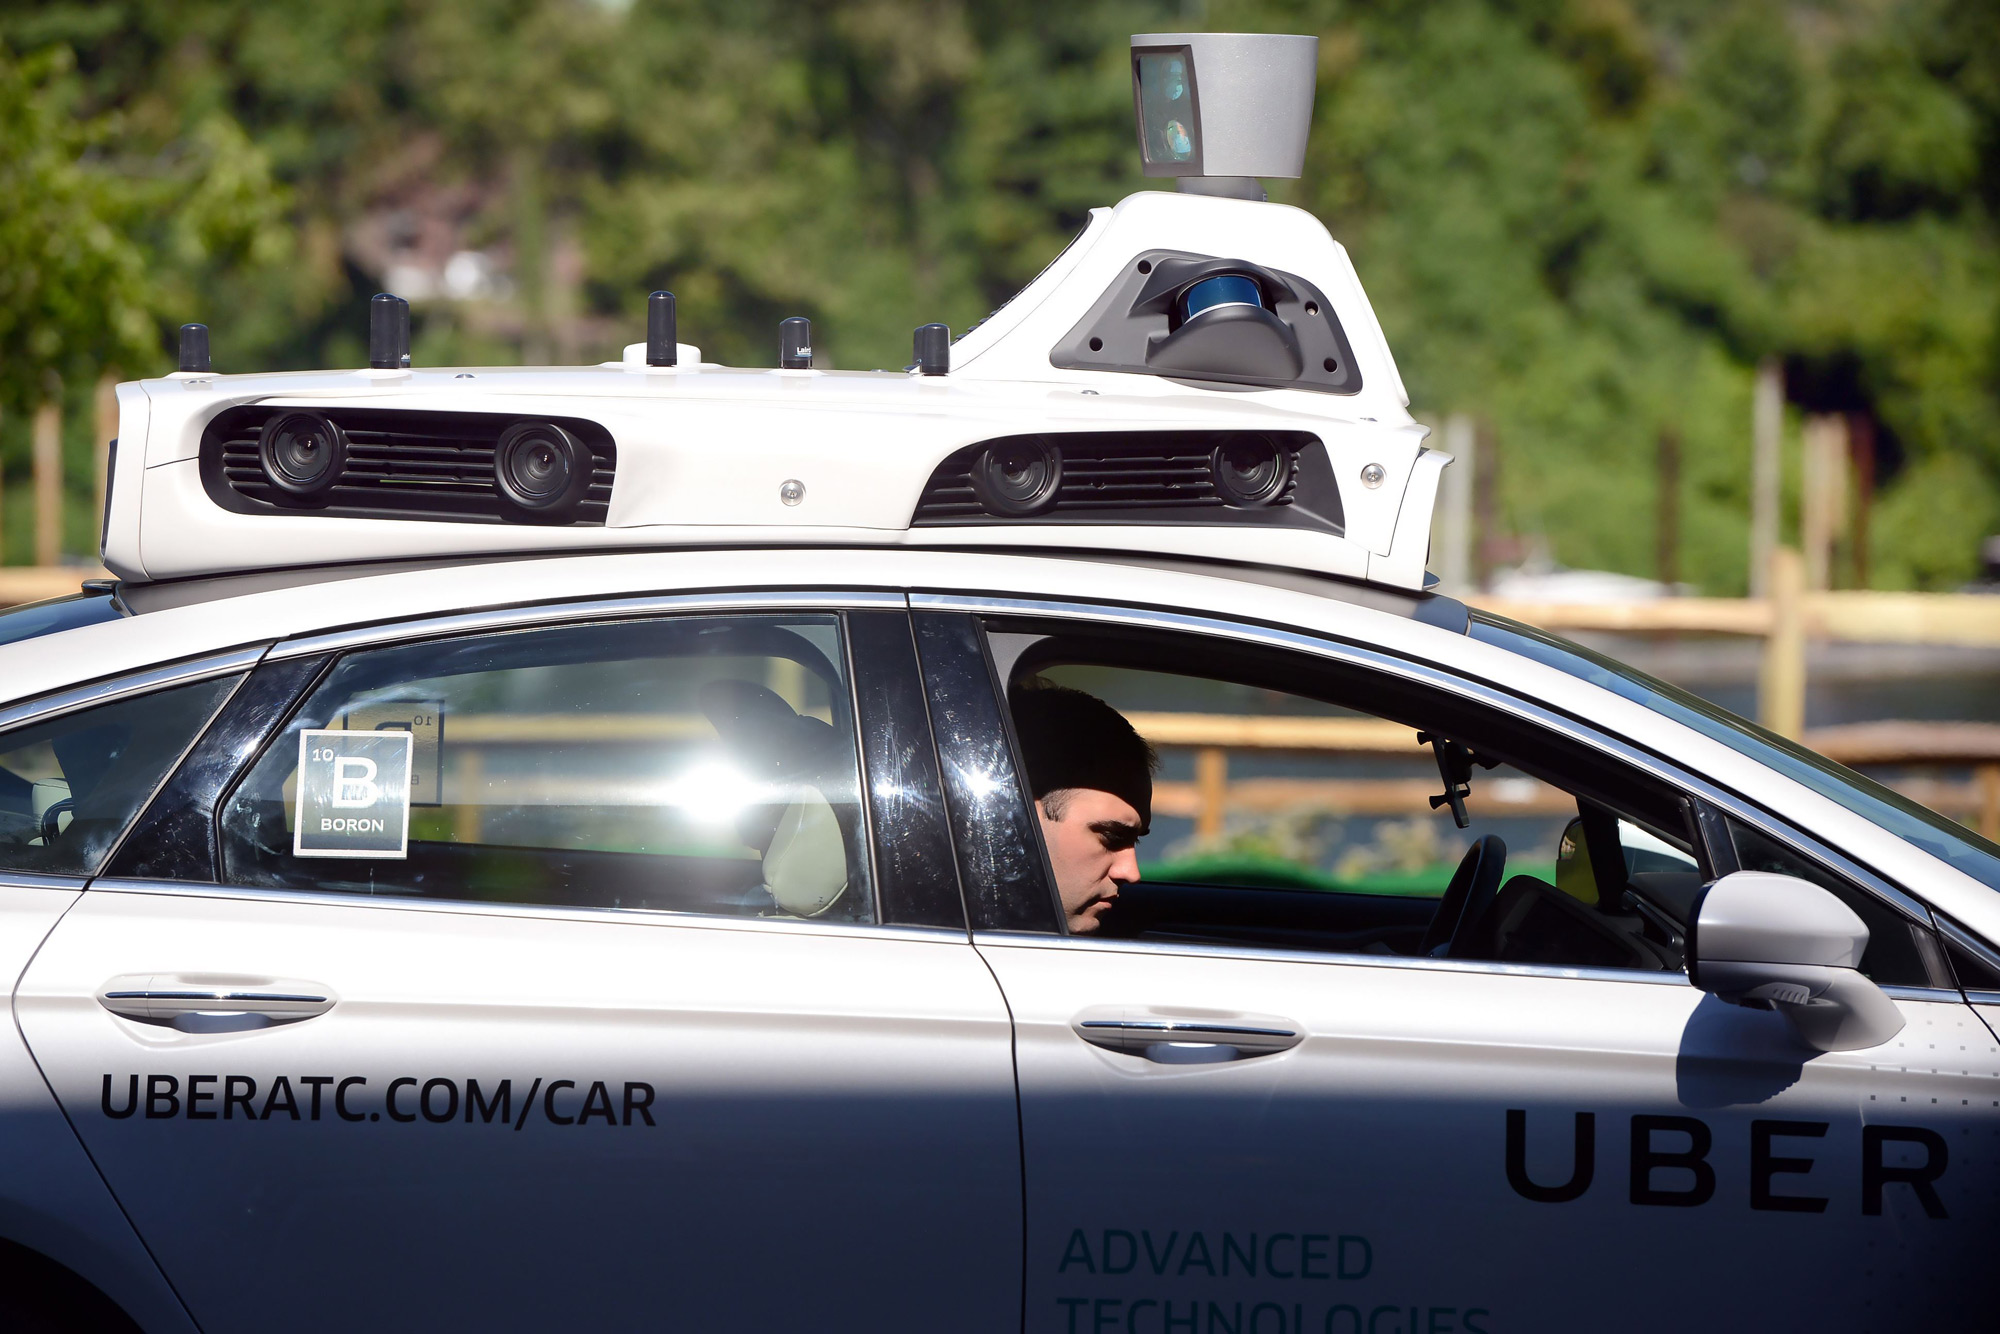 uber ford fusion autonomous details